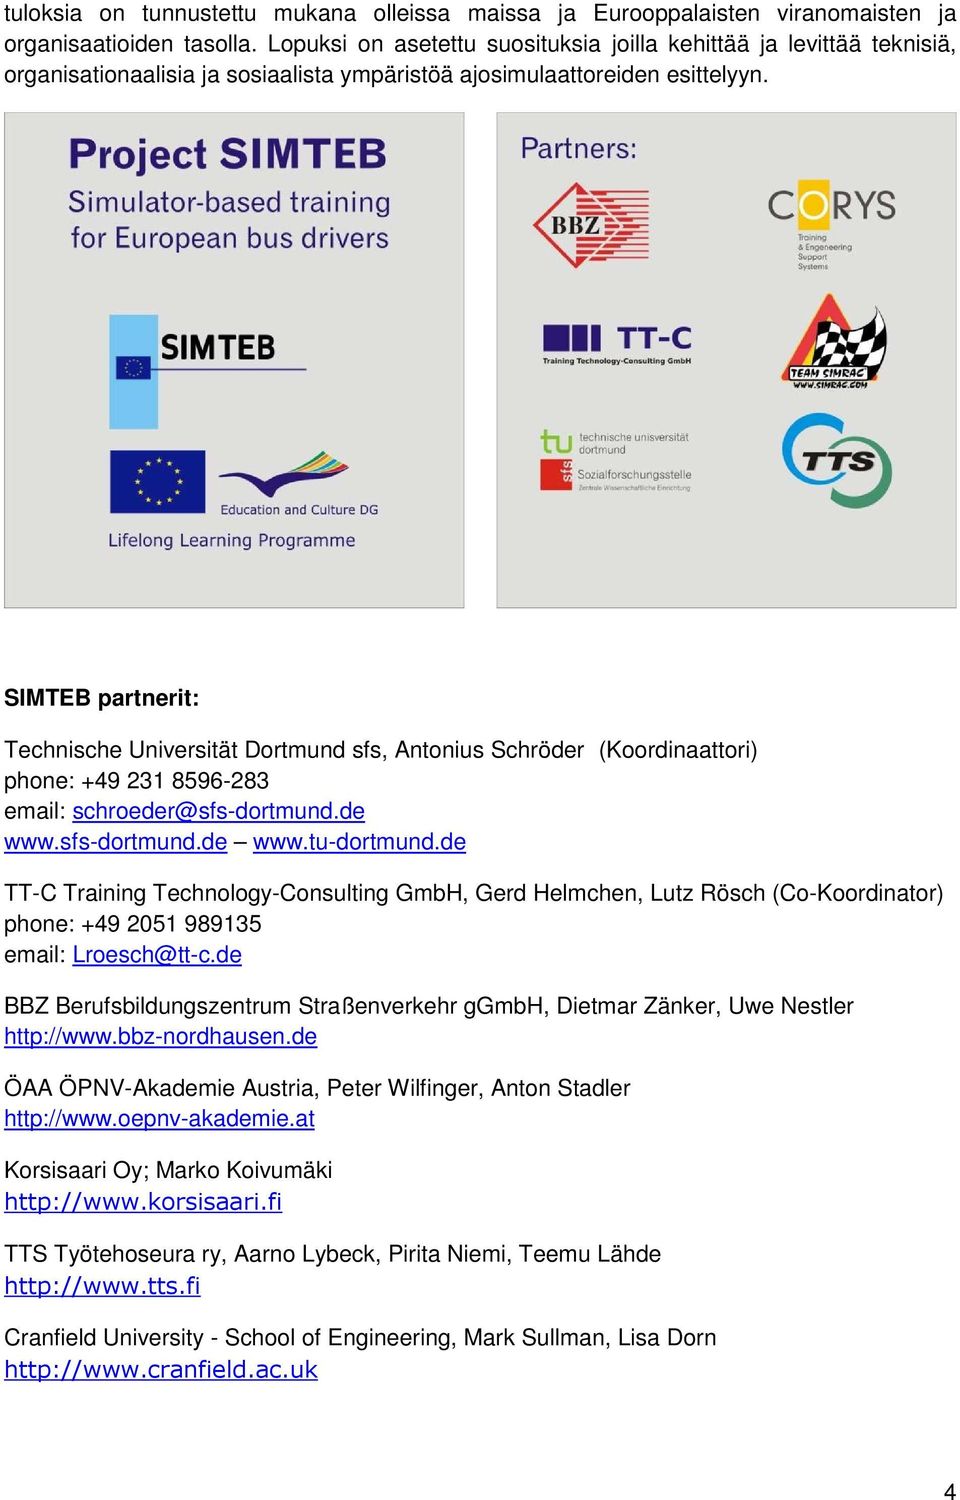 SIMTEB partnerit: Technische Universität Dortmund sfs, Antonius Schröder (Koordinaattori) phone: +49 231 8596-283 email: schroeder@sfs-dortmund.de www.sfs-dortmund.de www.tu-dortmund.